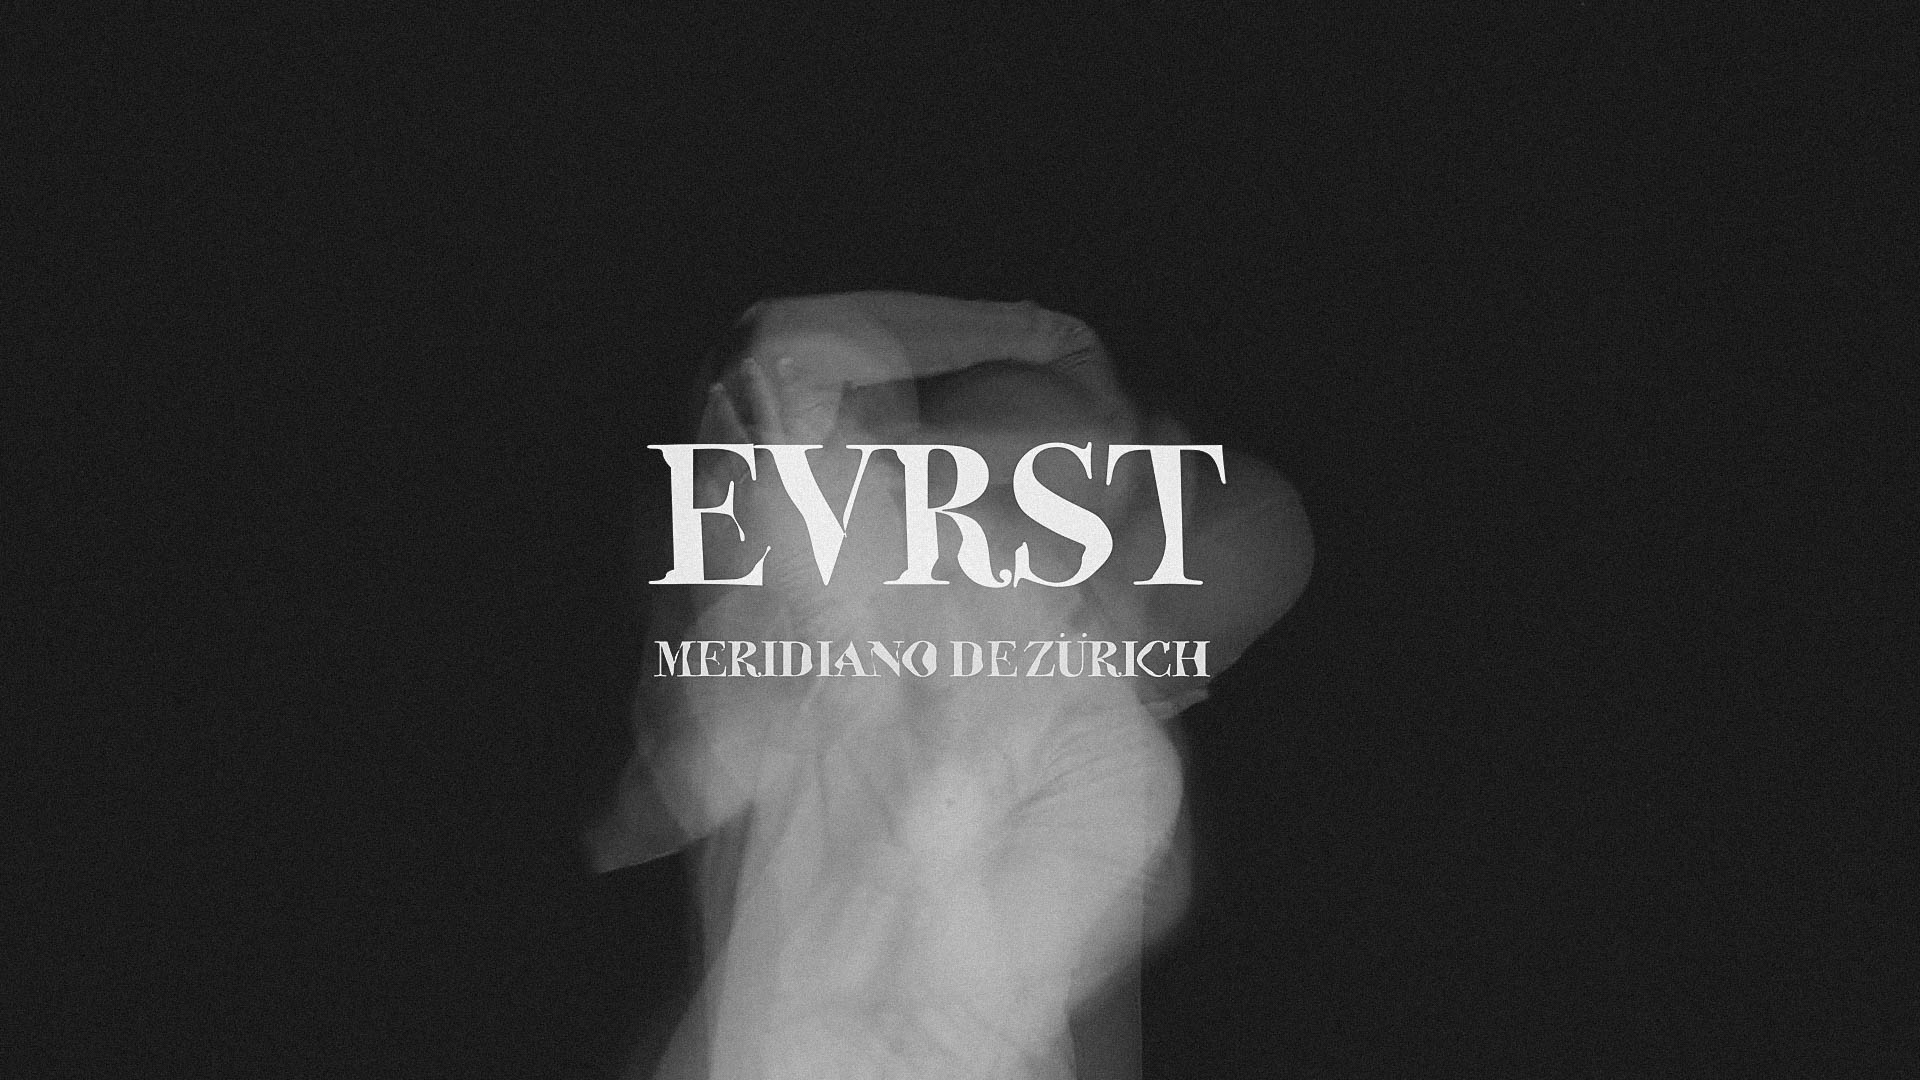 Meridiano de Zürich estrena videoclip para EVRST en adelanto de su nuevo álbum